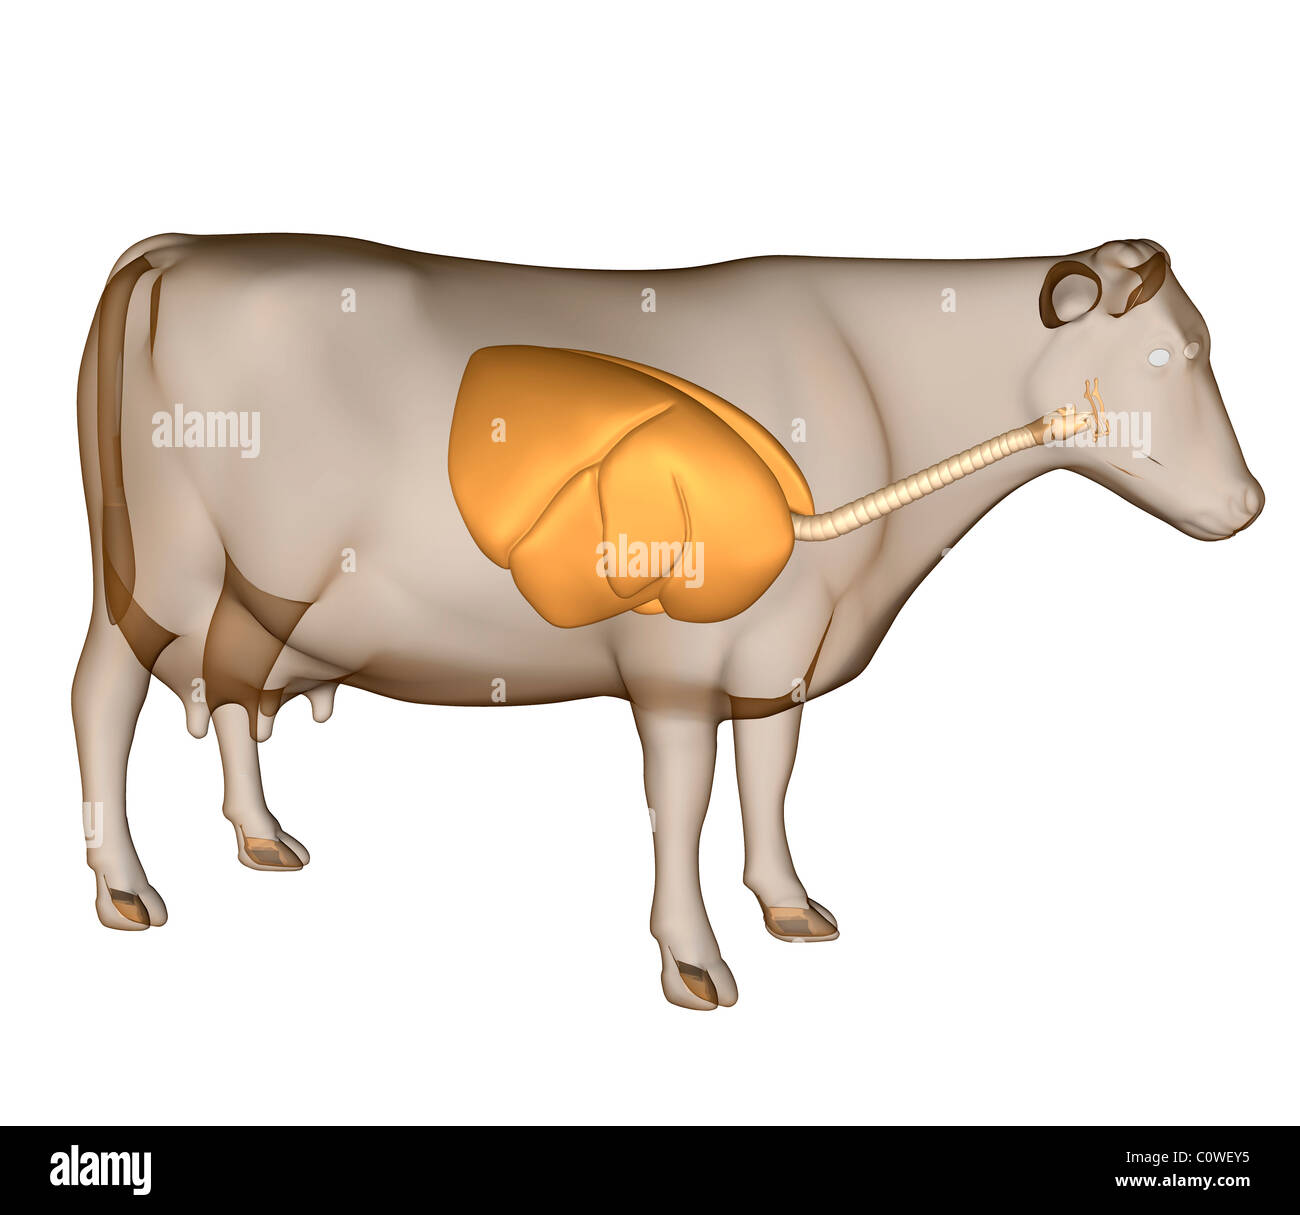 Anatomie de l'appareil respiratoire de vache Banque D'Images